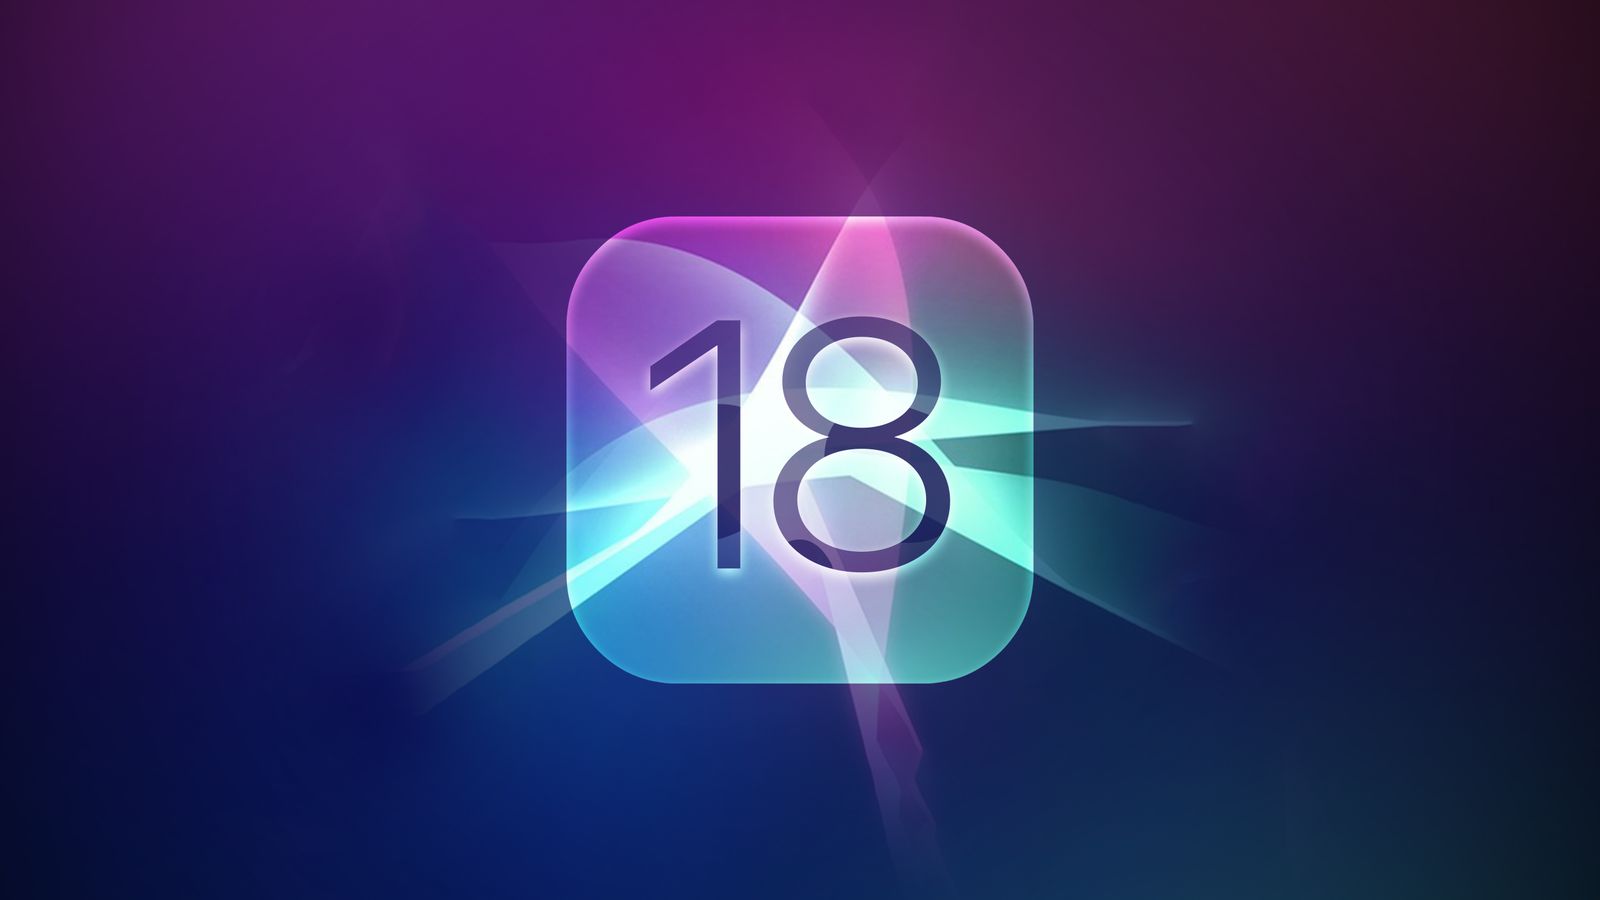 من iPhoneIslam.com، خلفية مجردة مع أيقونة تطبيق متوهجة تظهر الرقم 18، وتمزج بين درجات اللون الأرجواني والأزرق والوردي مع توهجات ضوئية خلال الأسبوع من 12 إلى 18 أبريل 2023.